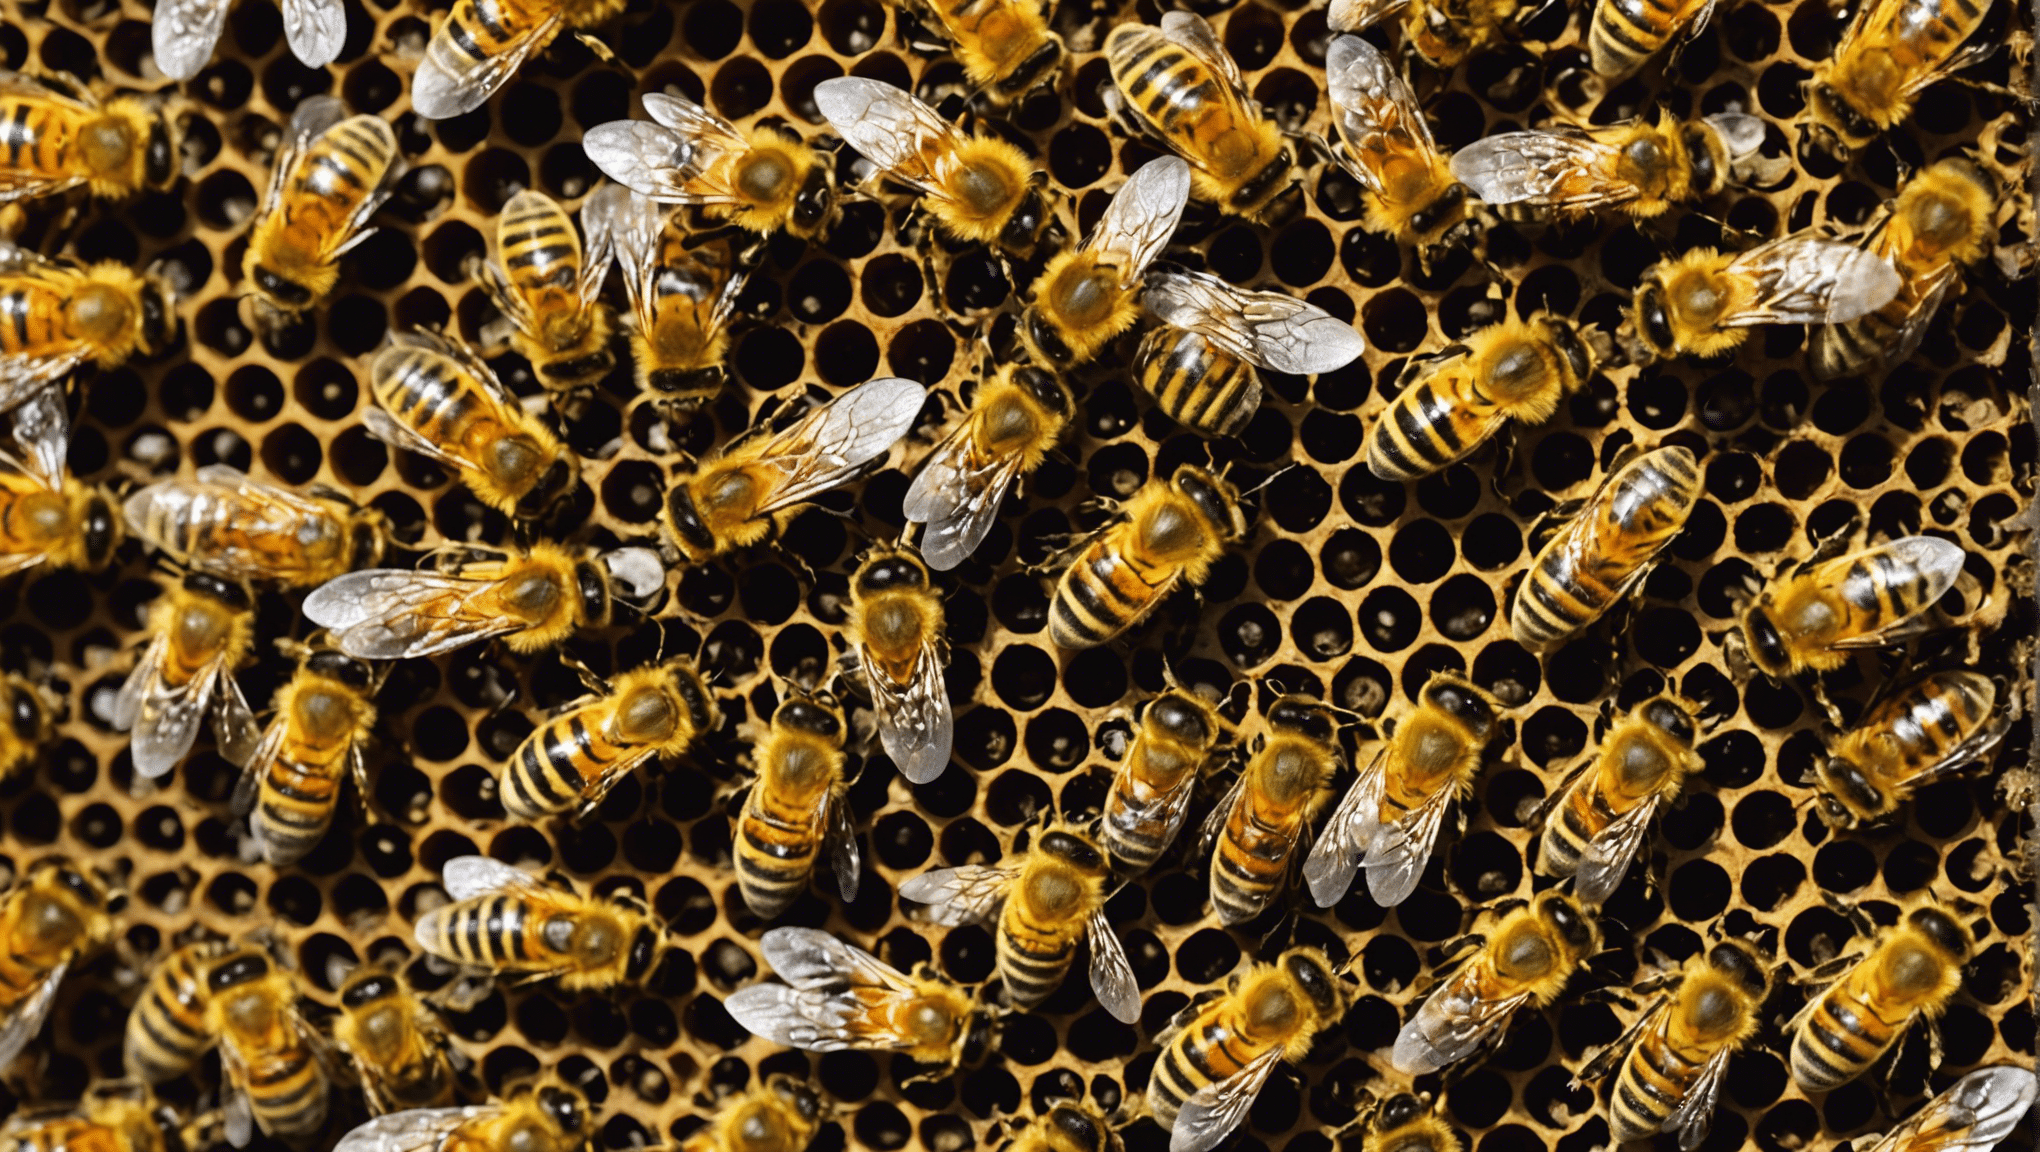 découvrez l'importance cruciale des abeilles dans la préservation de la biodiversité et les raisons pour lesquelles elles sont essentielles pour notre écosystème.